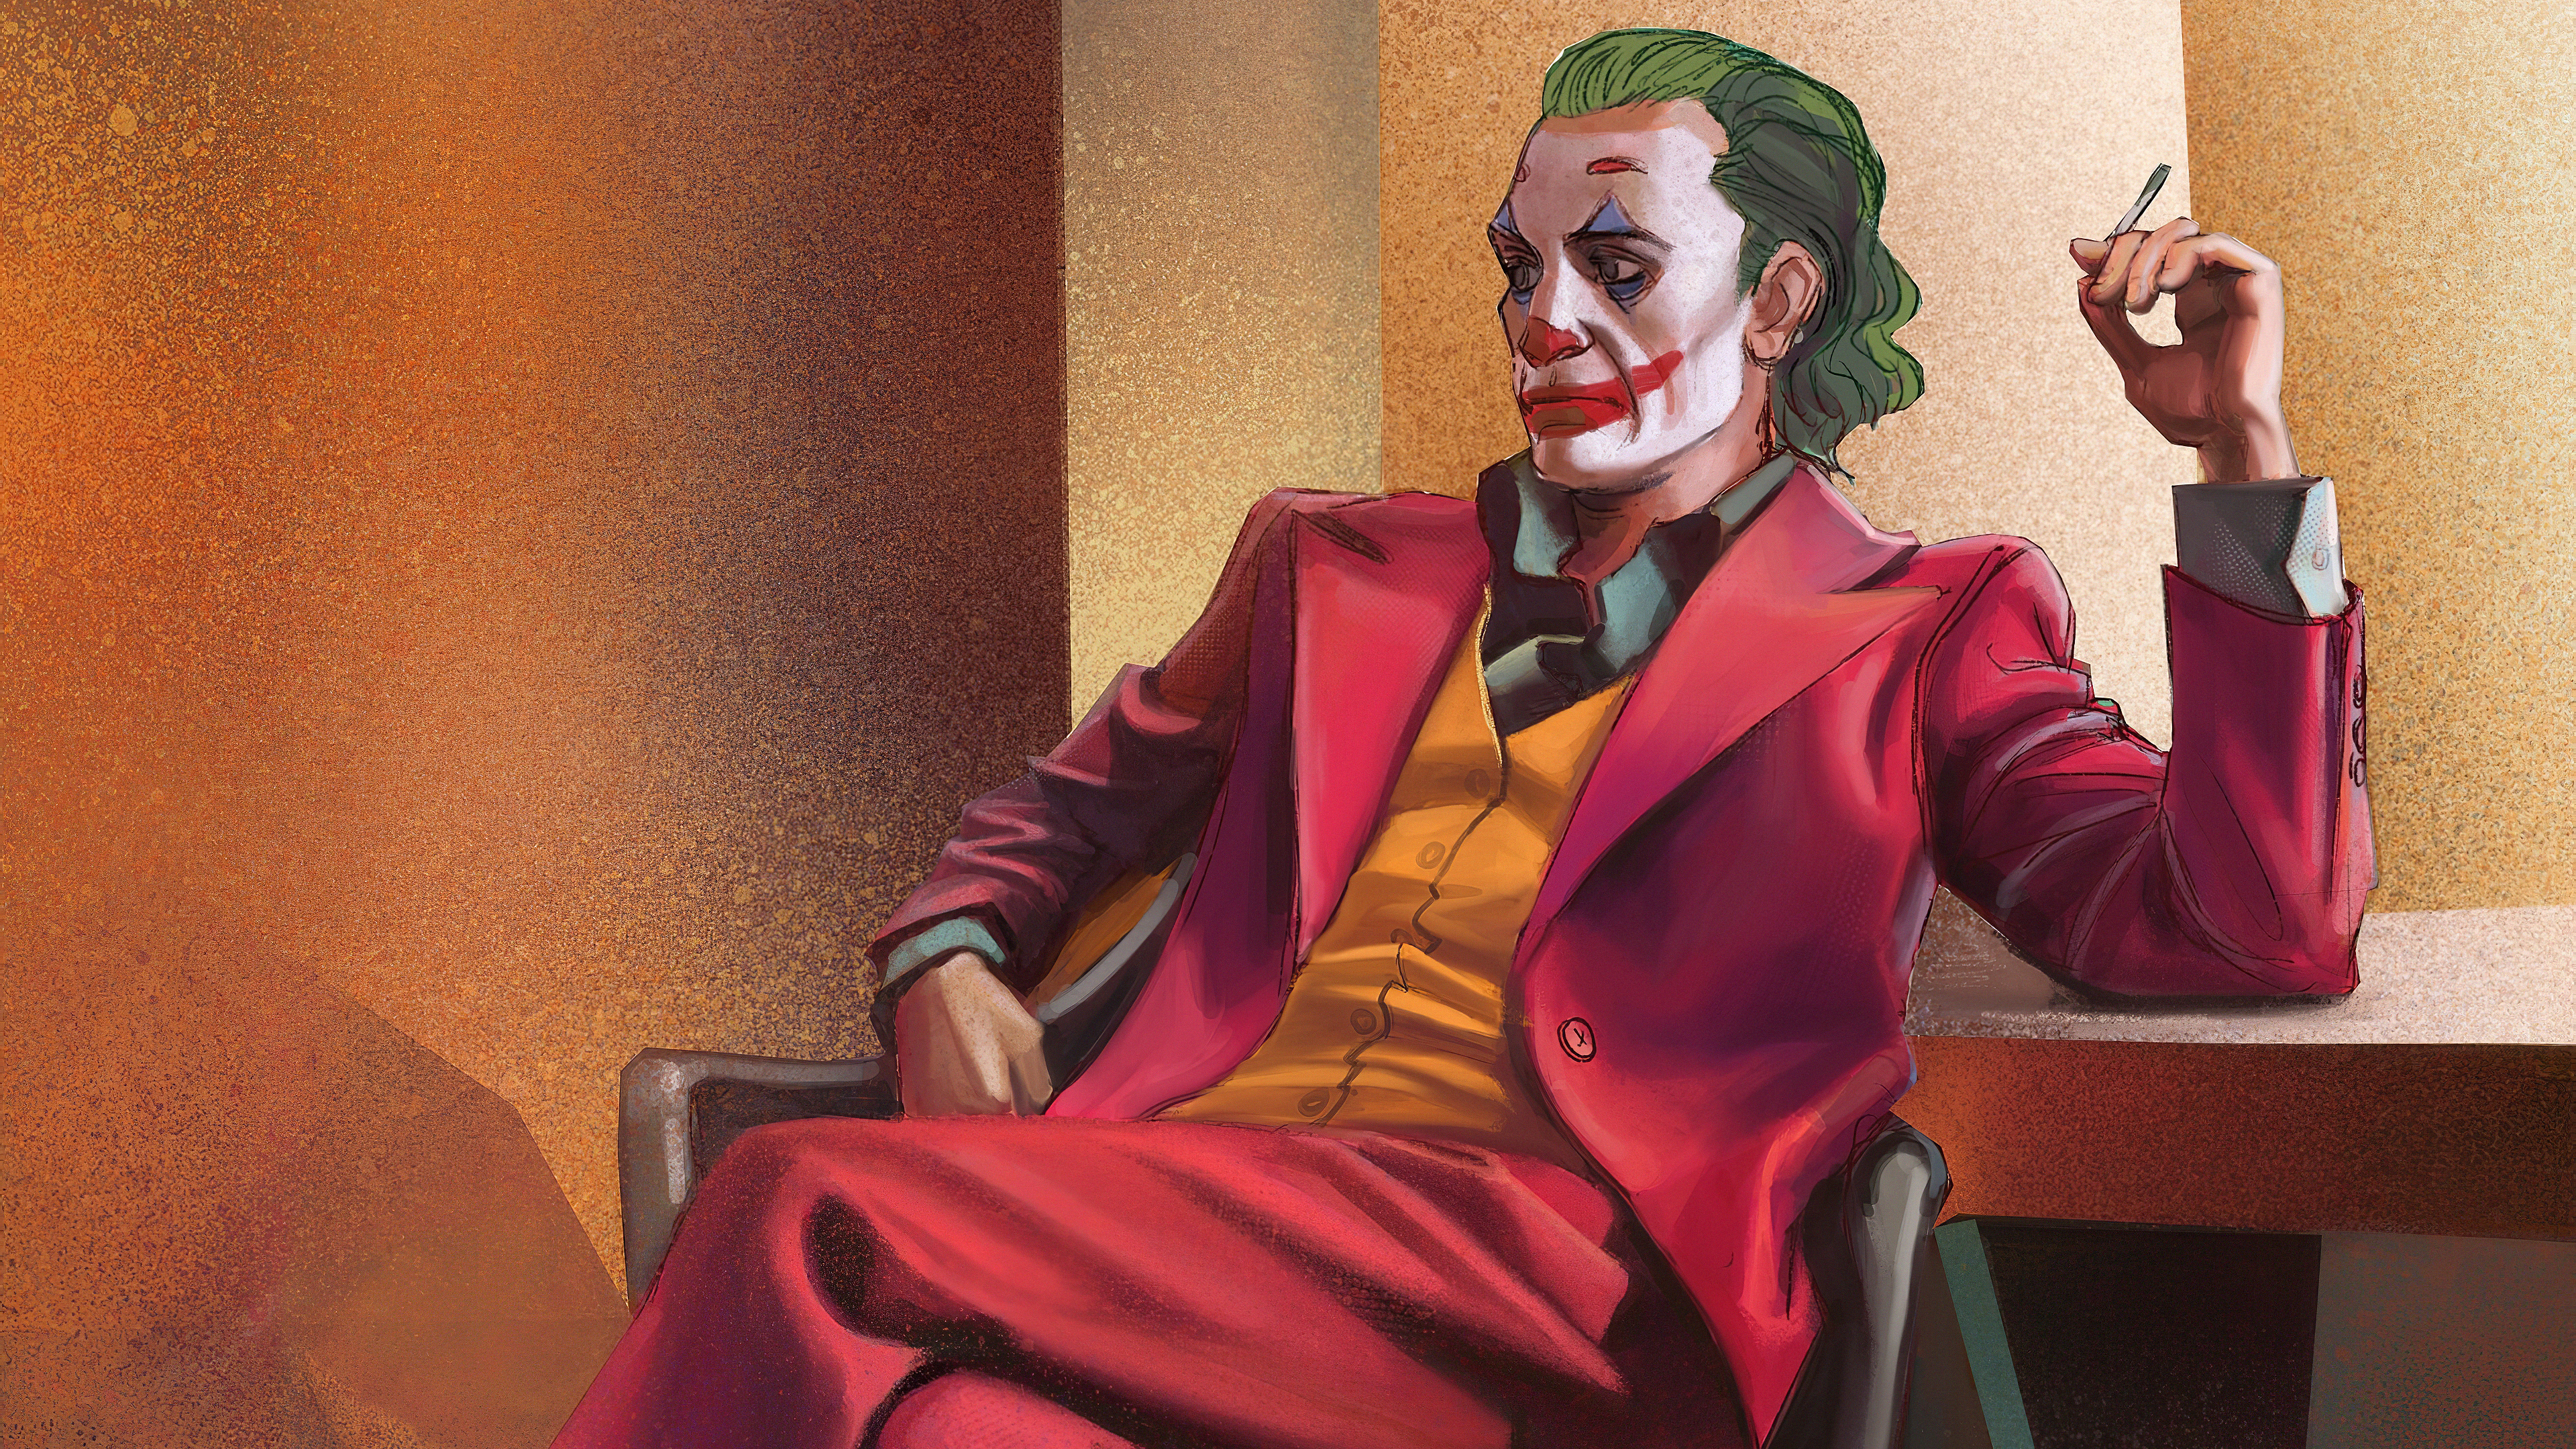 Joker 4k Ultra HD Wallpaper by merimyoke